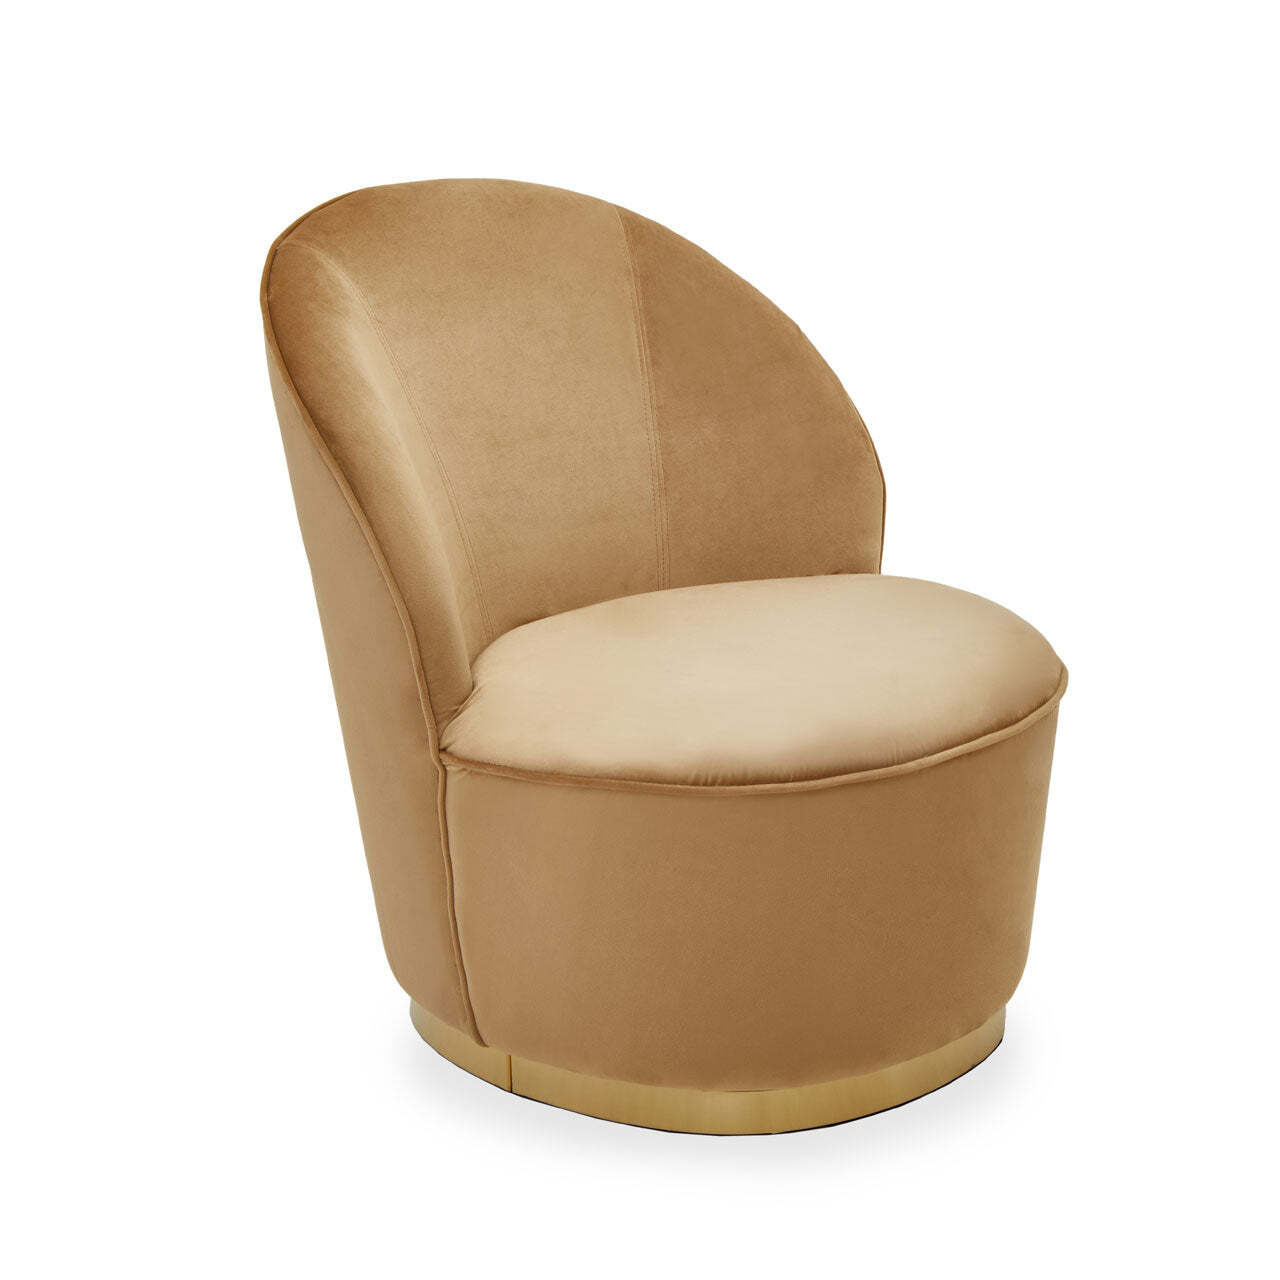 Olivia's Tara Kids Accent Chair in Gold Beige Velvet & Gold Legs - image 1